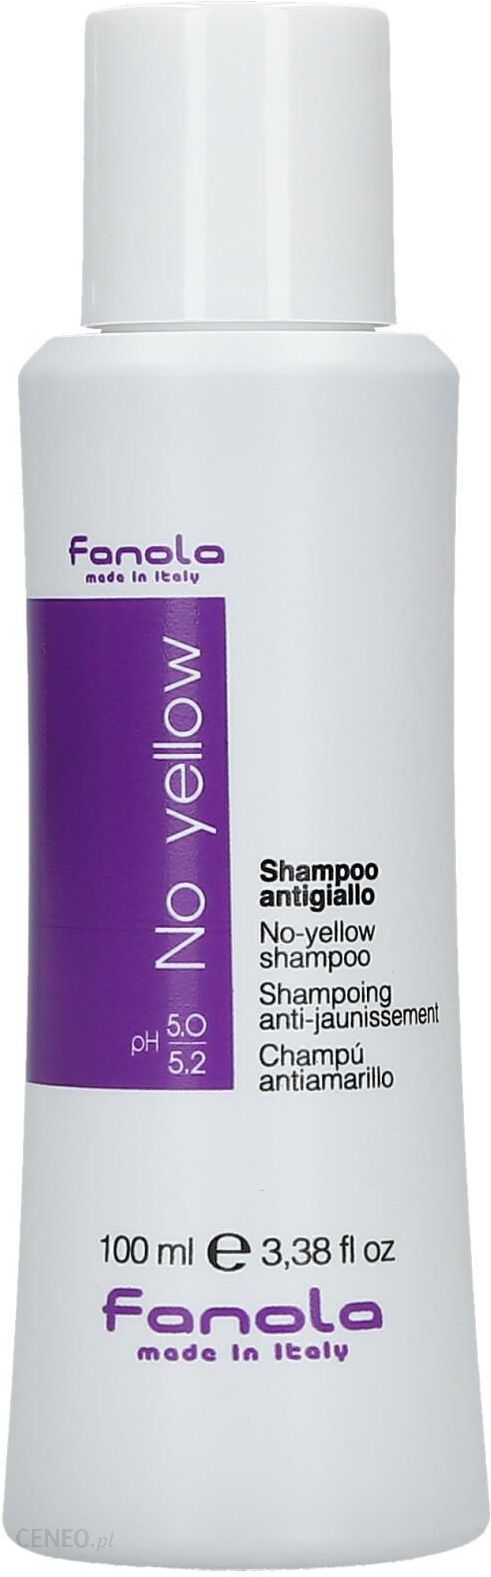 fanola szampon ceneo